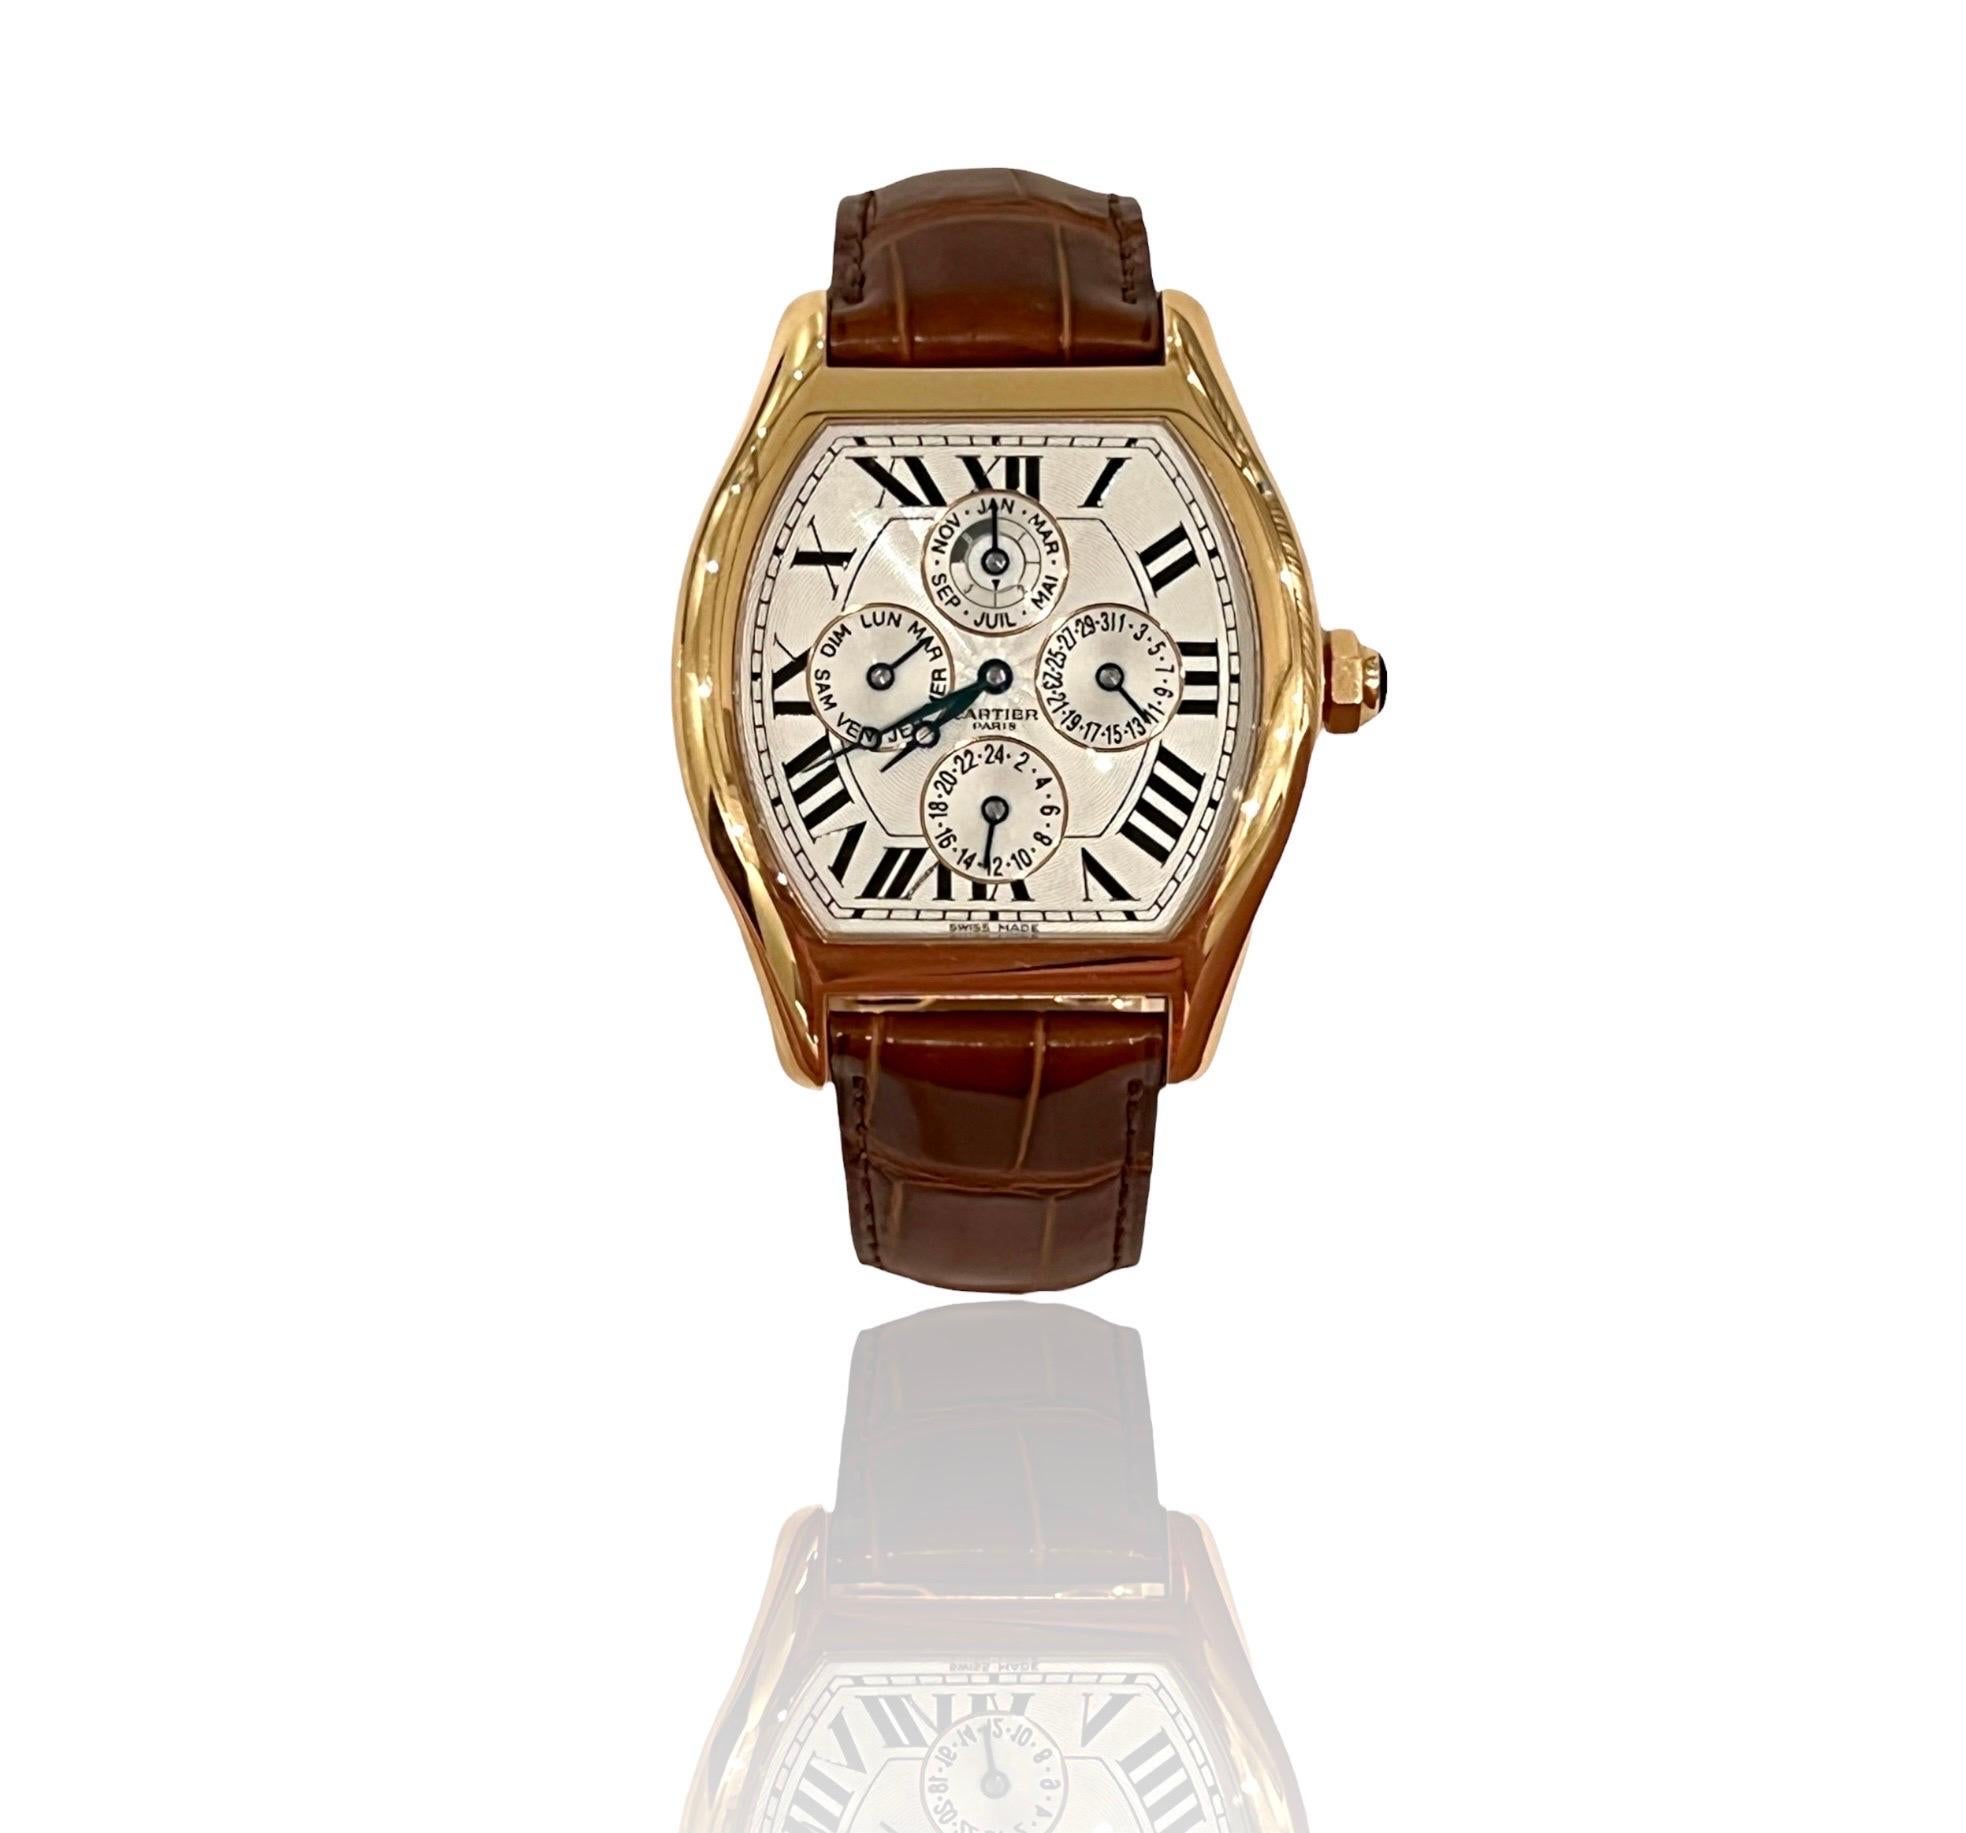 Rare montre-bracelet CARTIER Tortue XL
Edition limitée et numérotée, n'est plus disponible
De la collection spéciale de Cartier 